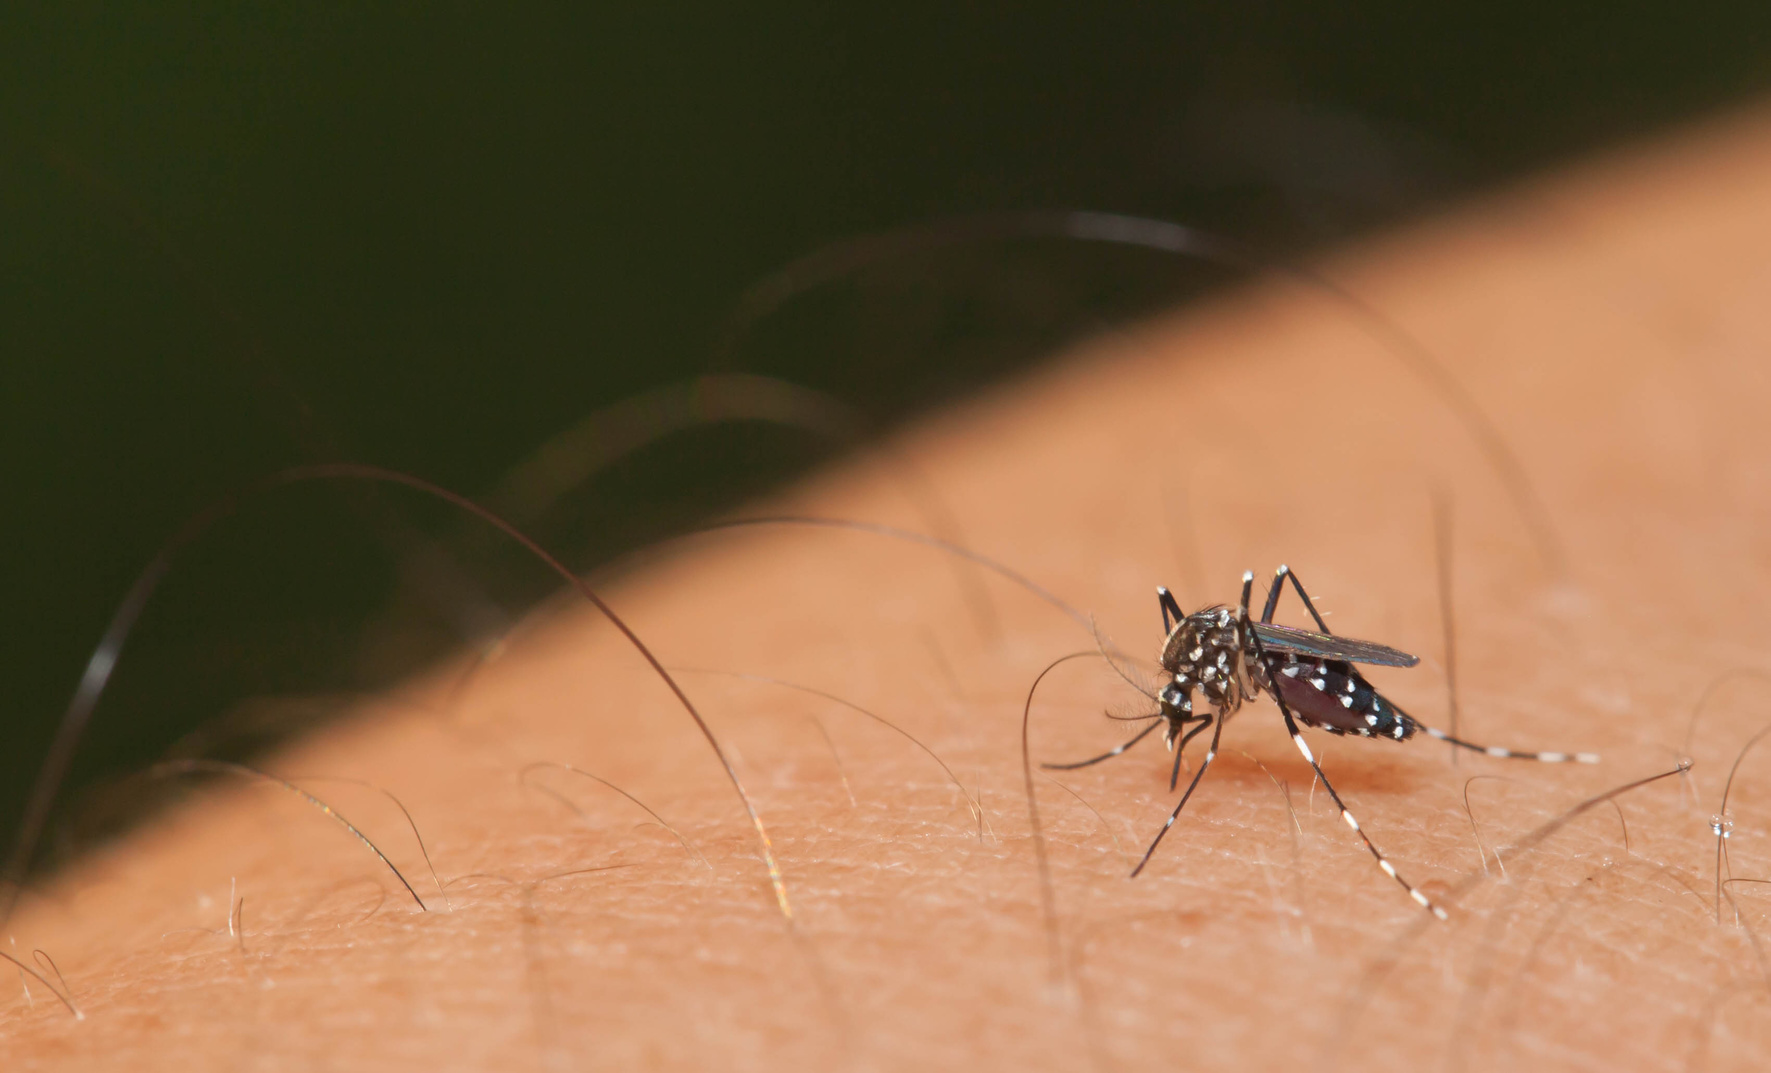 Il est impossible d'ttraper le virus du Sida par une simple piqûre de moustique. © Lirtlon, Fotolia